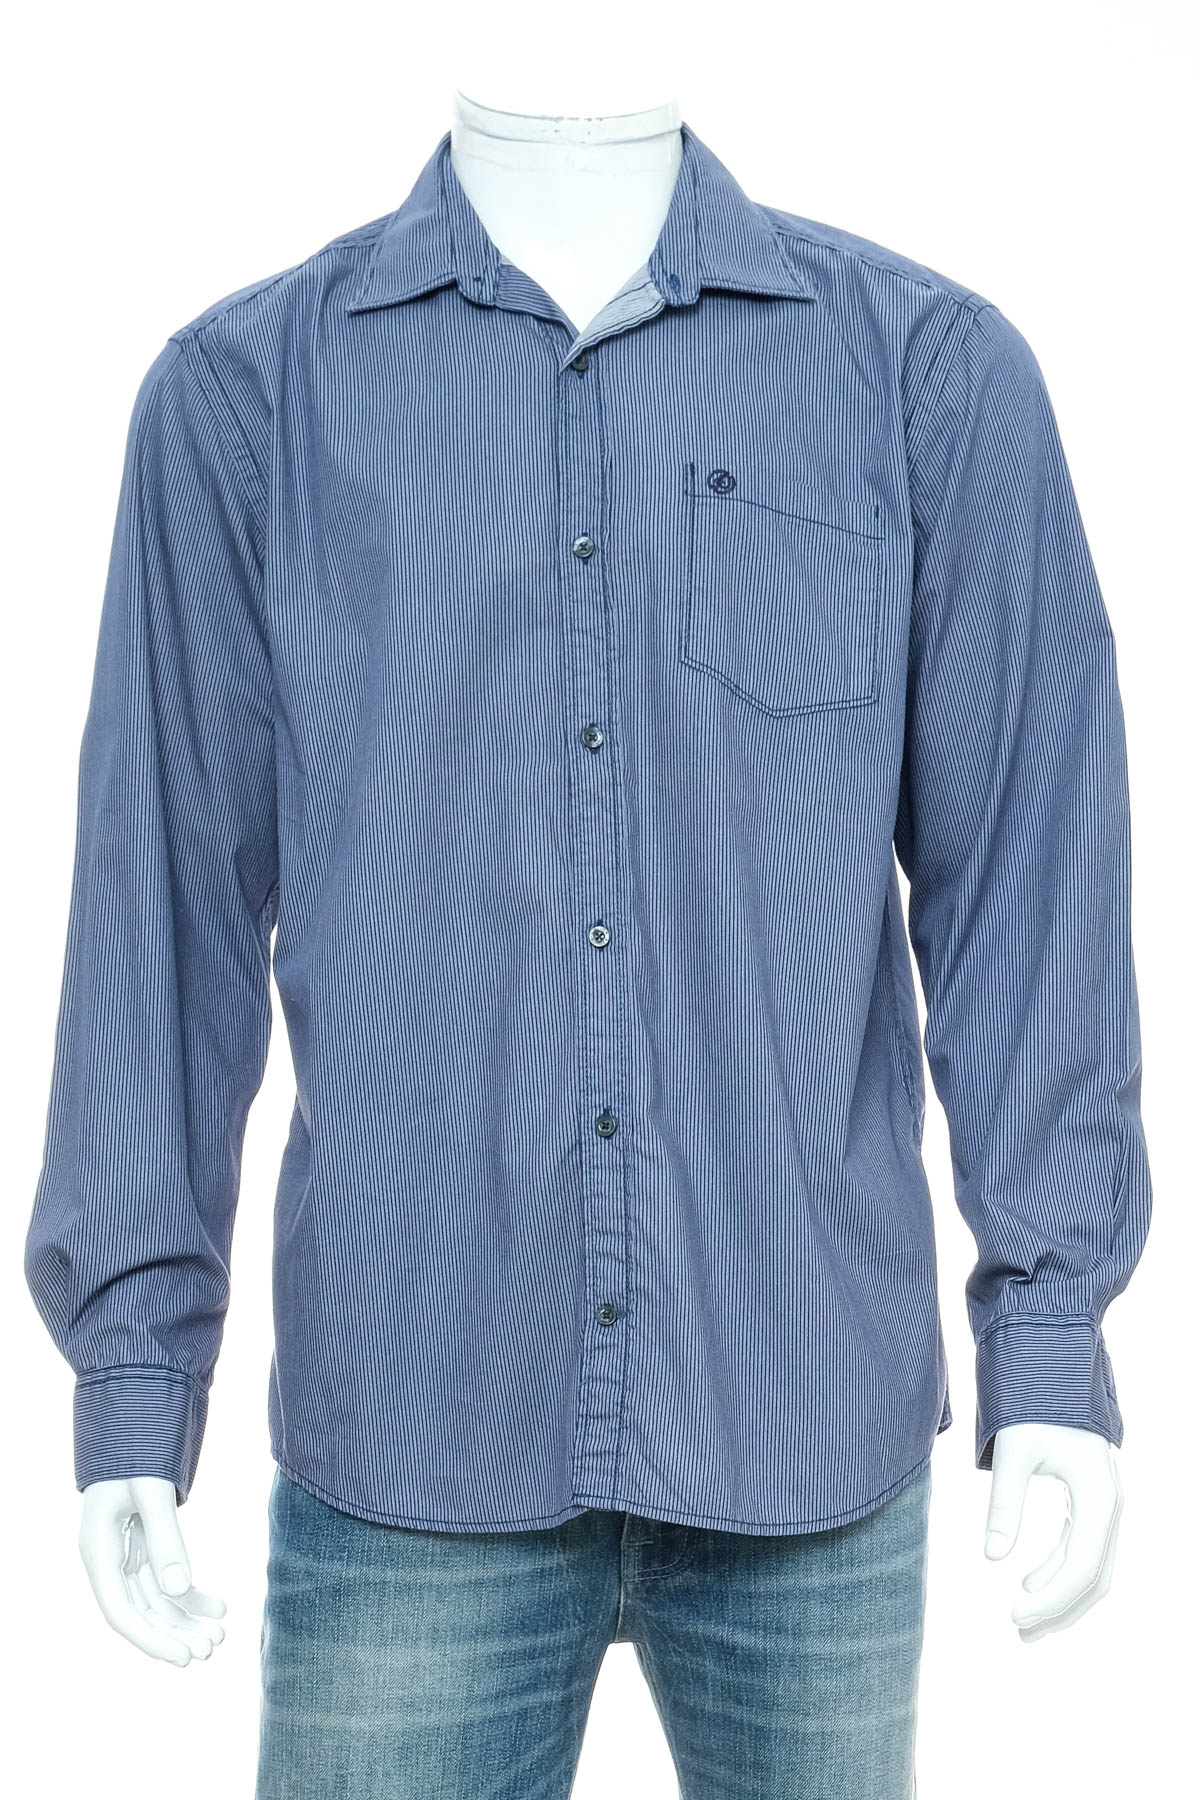 Ανδρικό πουκάμισο - S.Oliver - 0